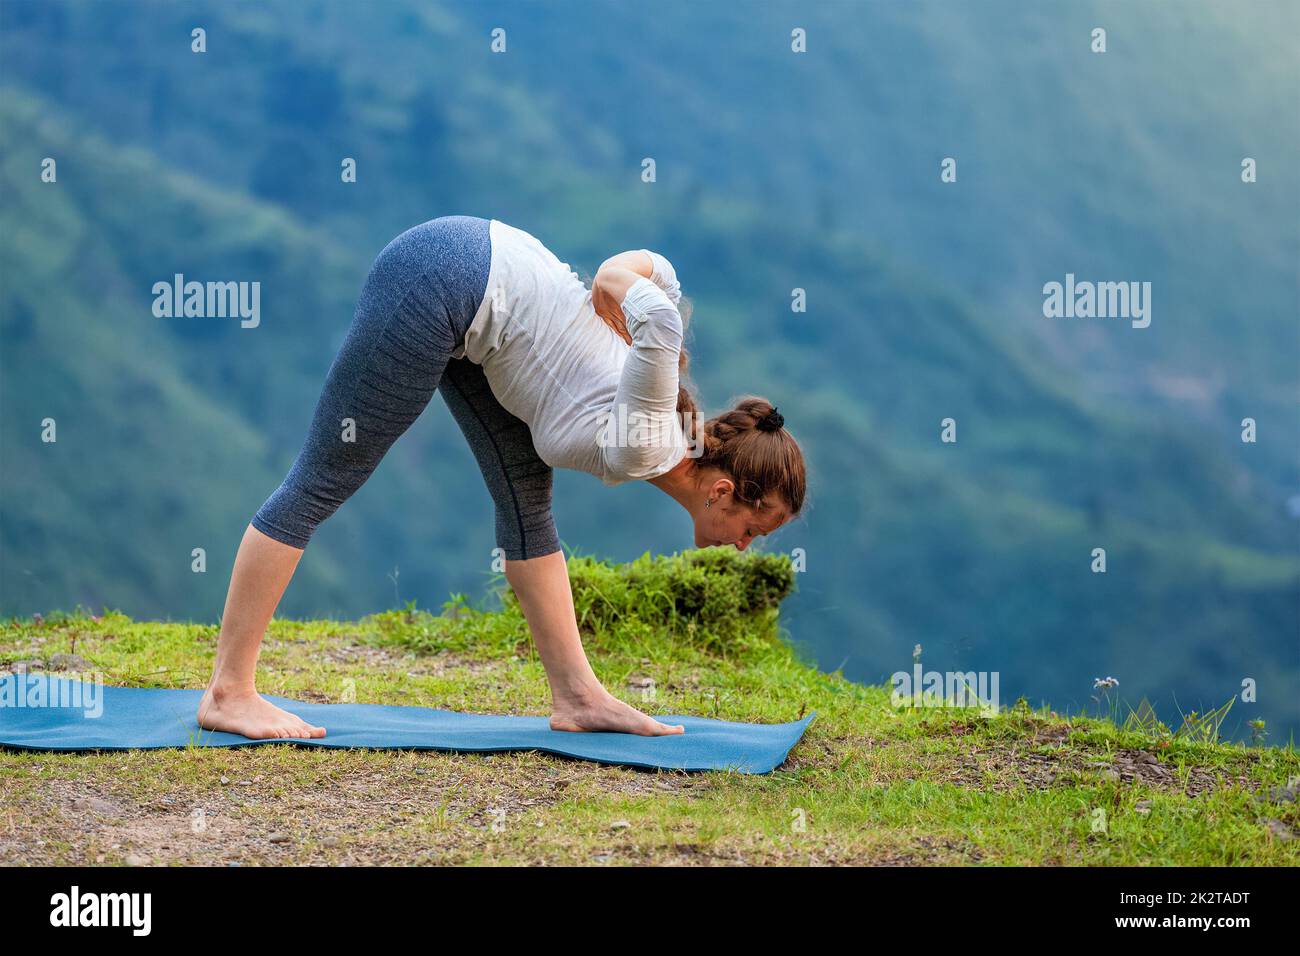 Woman doing Ashtanga Vinyasa yoga outdoors Stock Photo